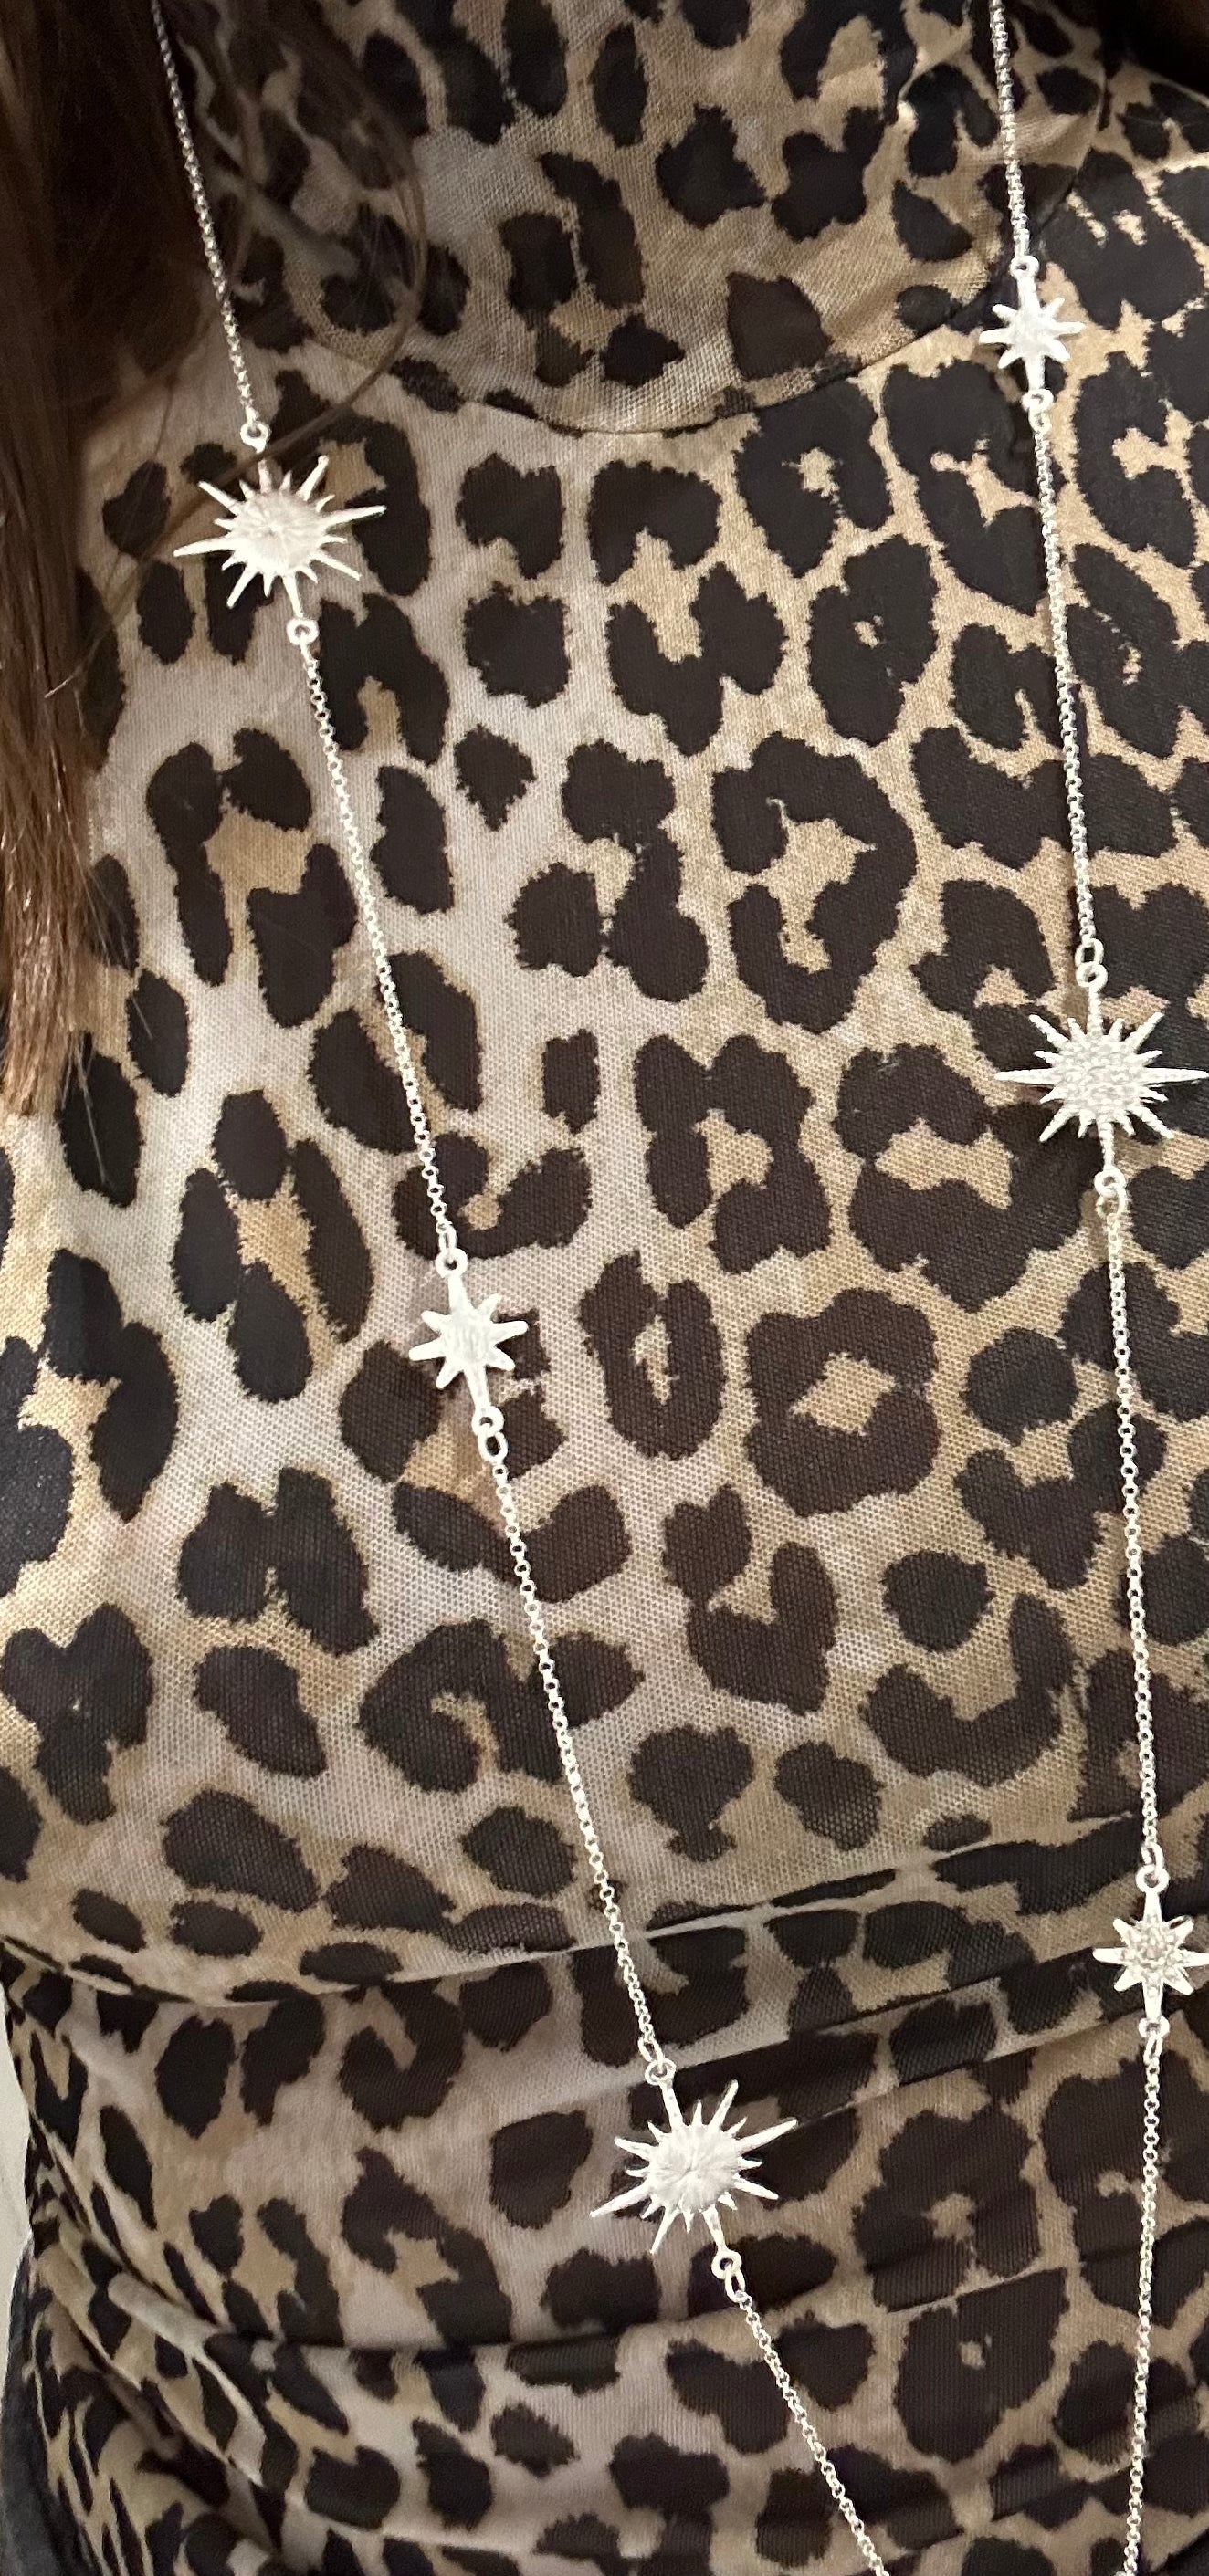 Starburst Chain necklace